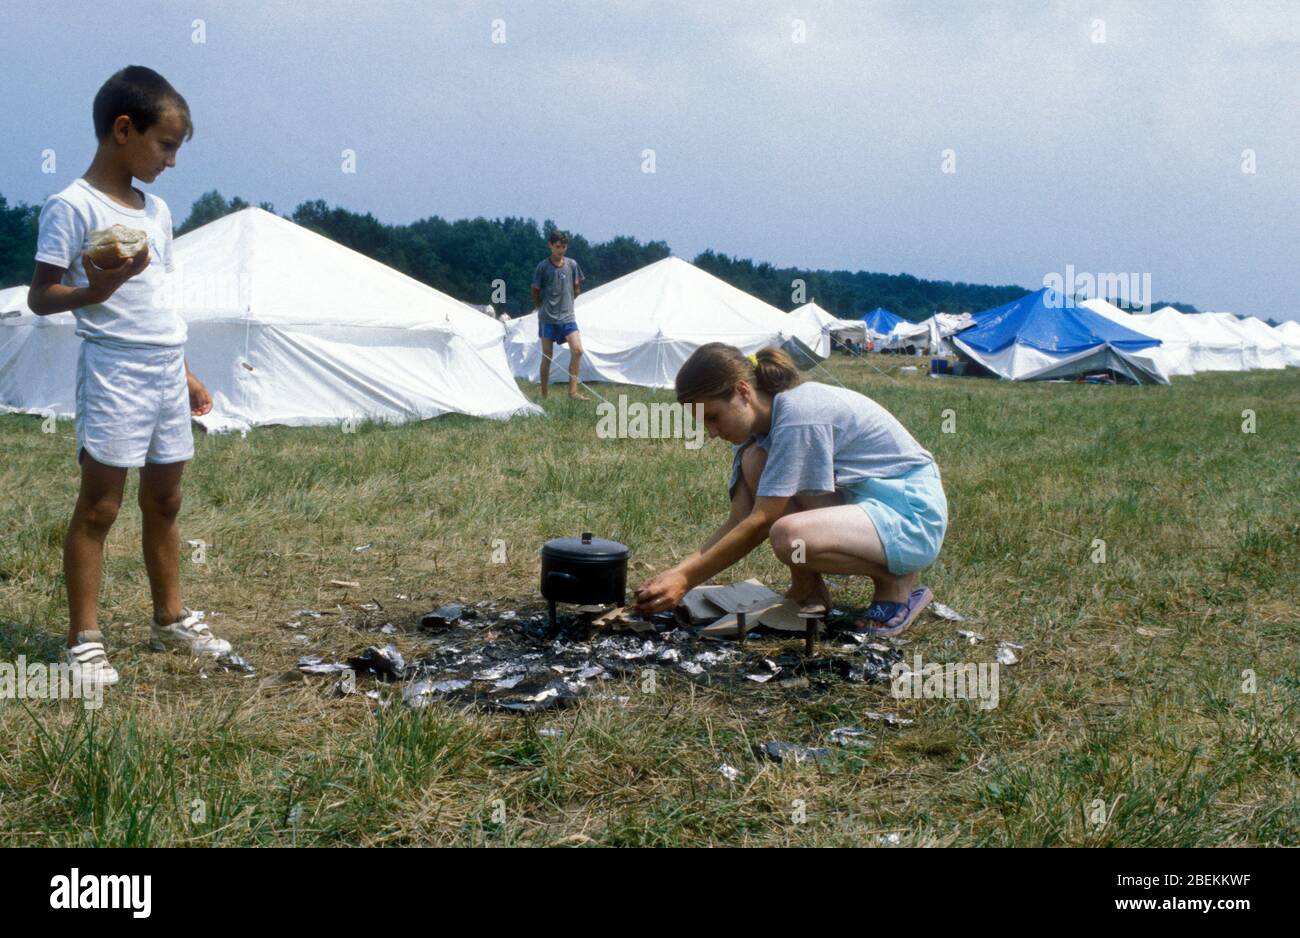 1995 - Flugplatz Tuzla temporäres UN-Flüchtlingslager für bosnische Muslime, die vor dem Massaker von Srebrenica während des Bosnienkrieges fliehen. Kinder stellen Kochmöglichkeiten mit Holz Stockfoto